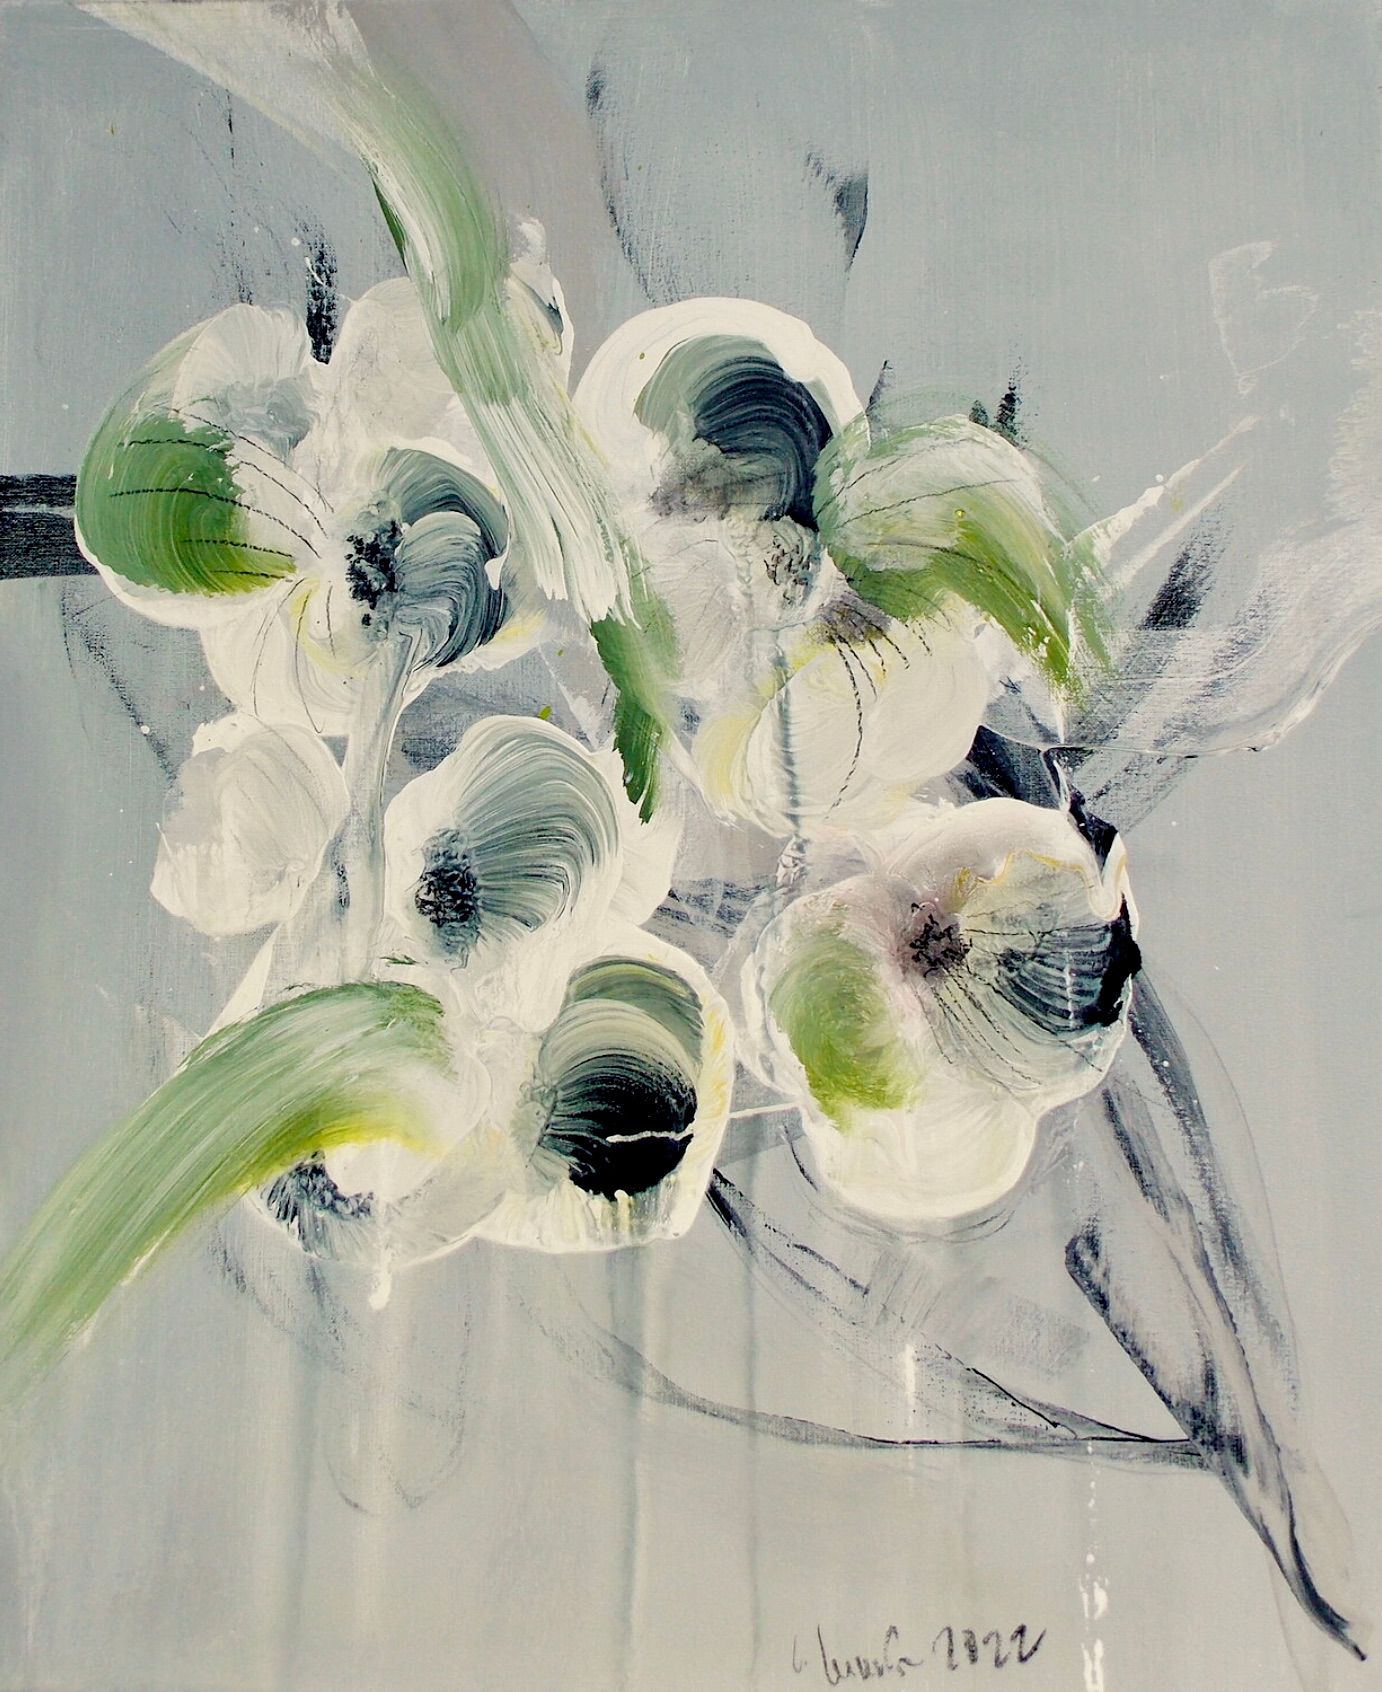 En el cuadro expresionista abstracto de flores "Blumenrausch 1" de Christa Haack dominan los colores beige, verde y negro.